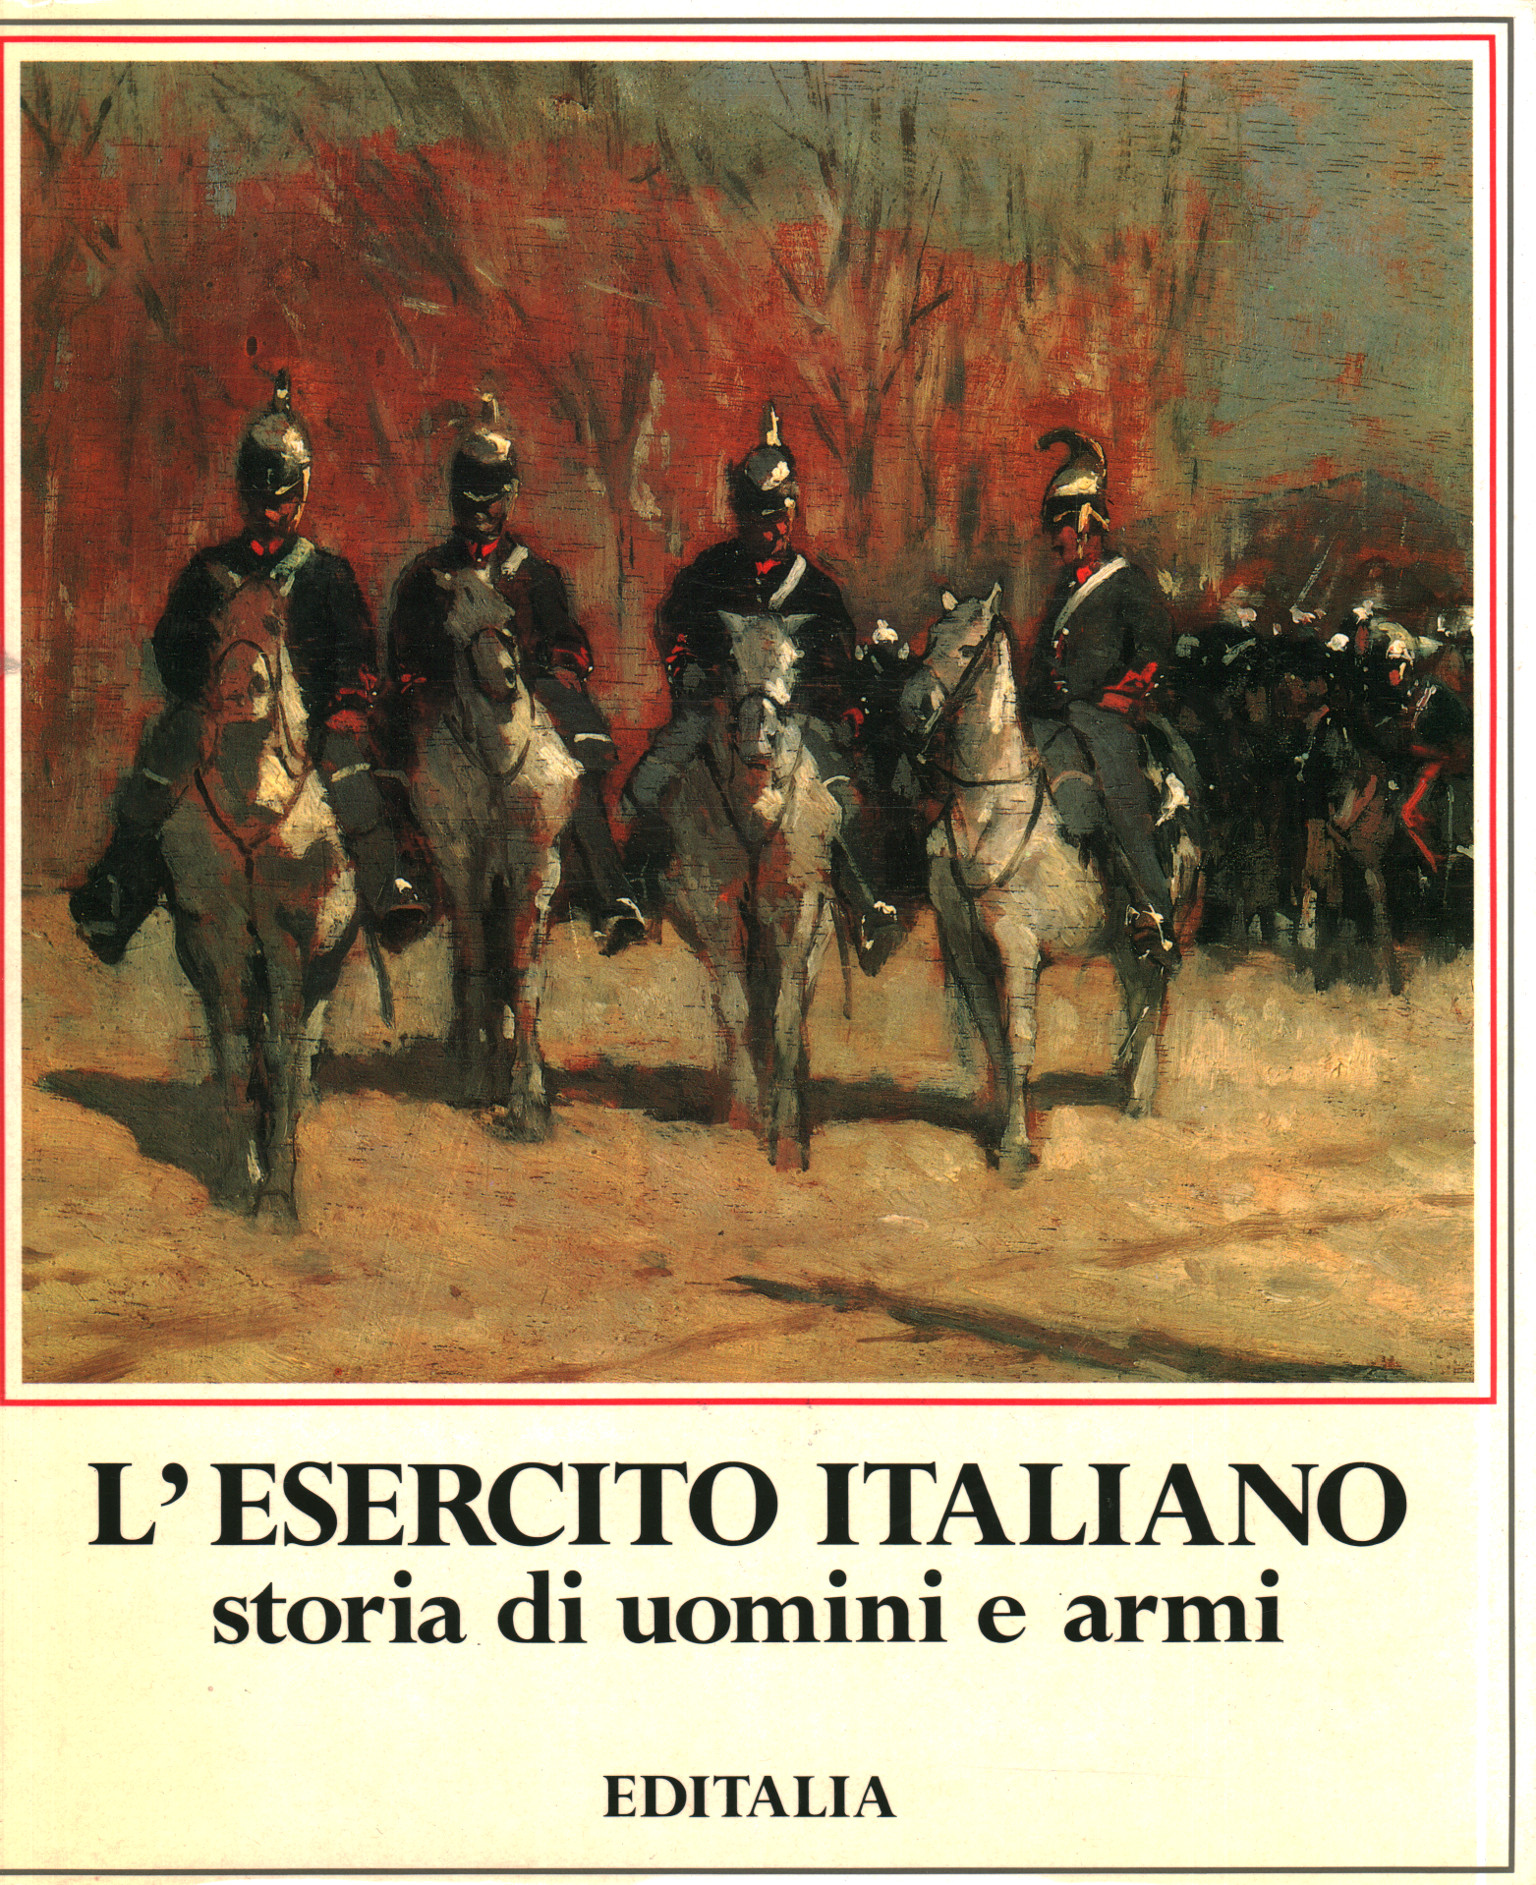 L'histoire des hommes et des armes de l'armée italienne, Arrigo Pecchioli